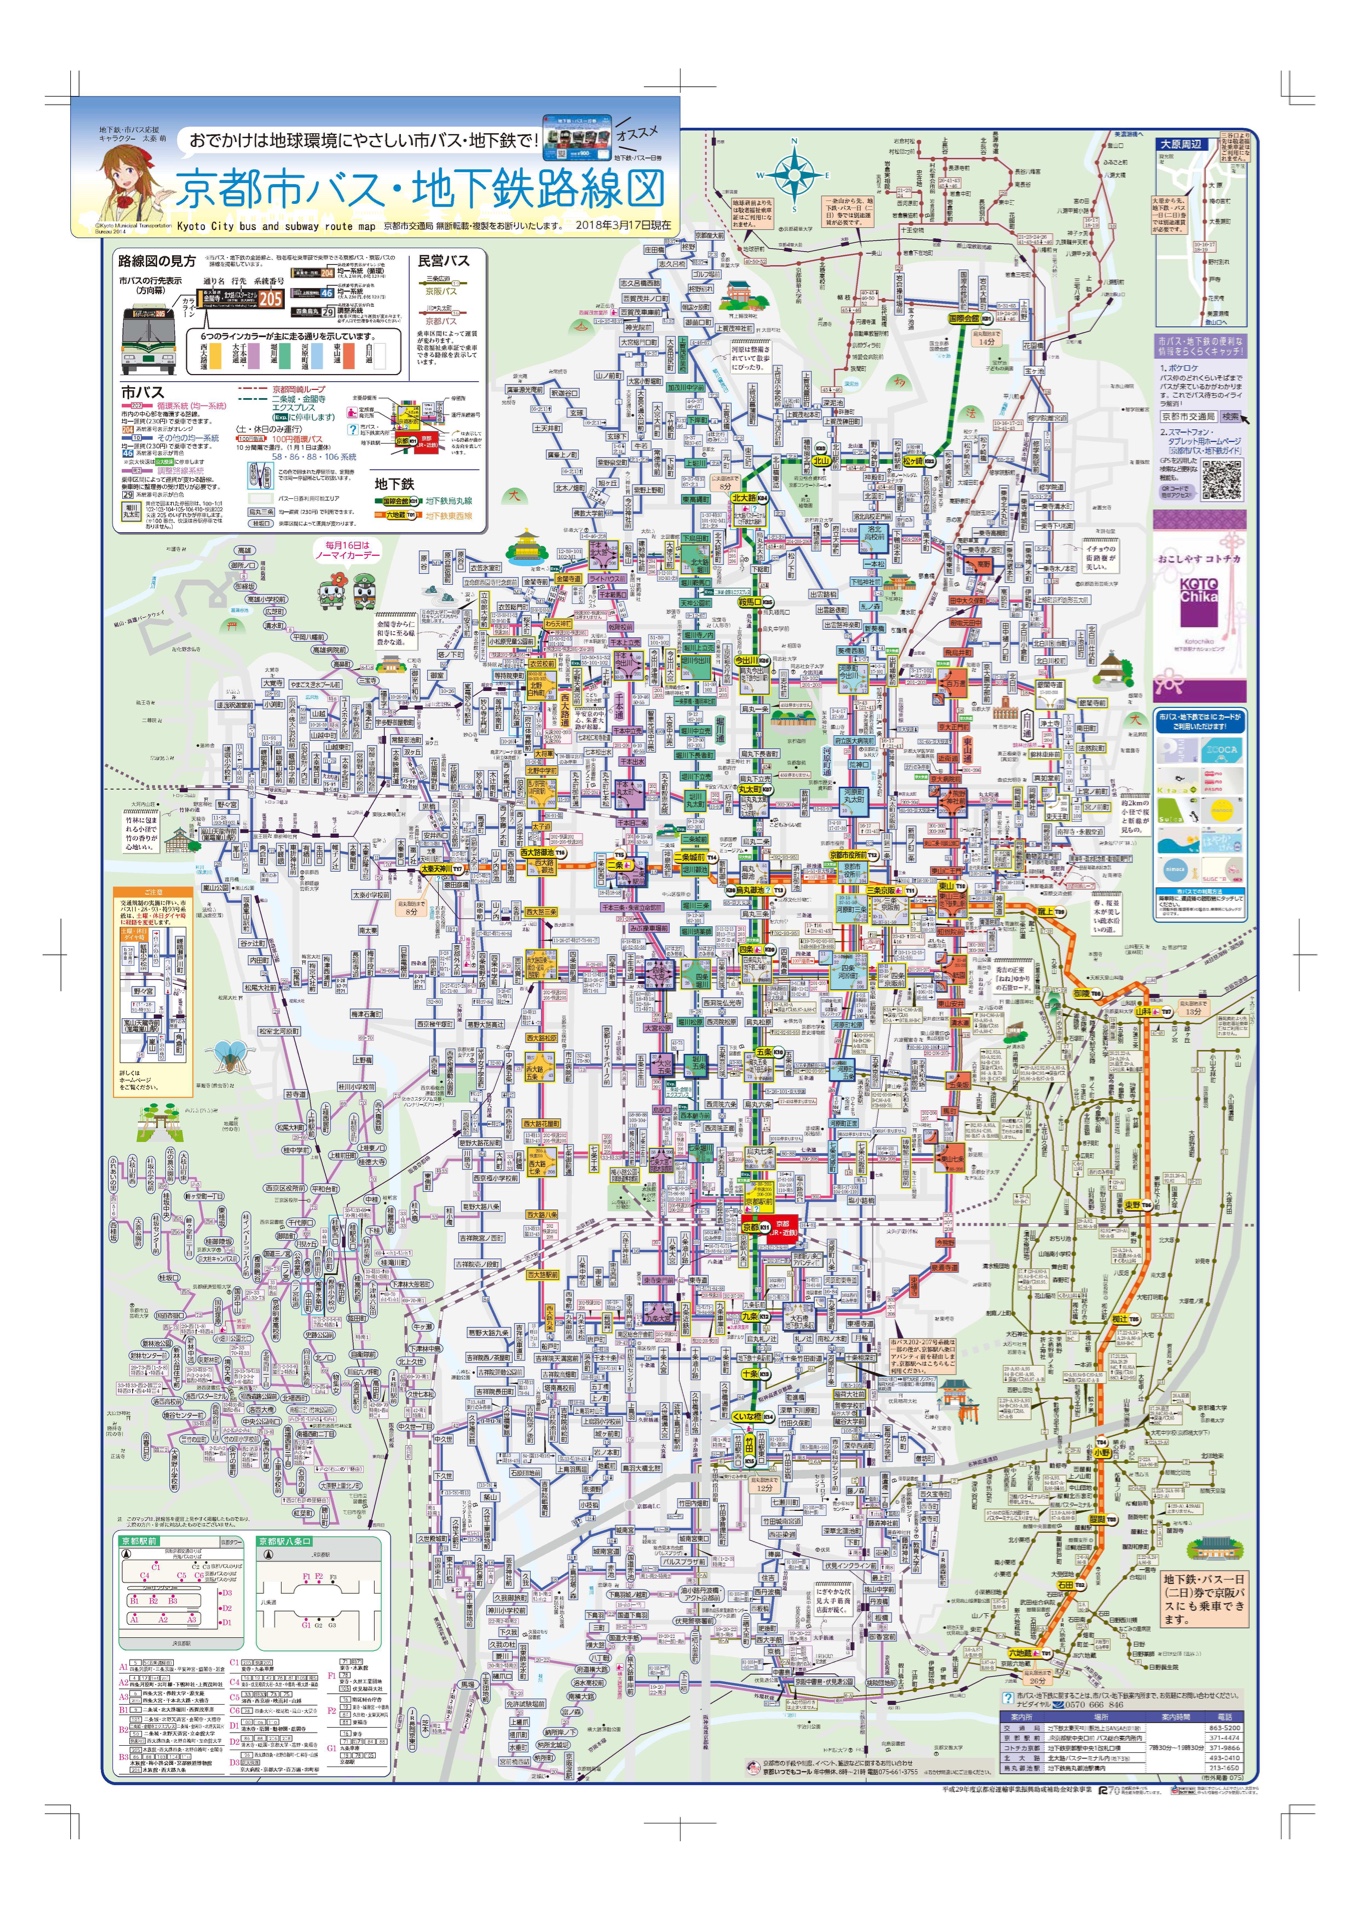 为了这次的京都自由行，也颇做了一番功课。手机地图自然远比纸质的方便快捷，然而屏幕过小，放大缩小之间，有些小路和景点会消失，因此还是搞一张全局的地图比较好。手帐里有地铁和观光巴士的路线，但还缺一般巴士的，建议到京都交通局的网站下载，有中文版本的。